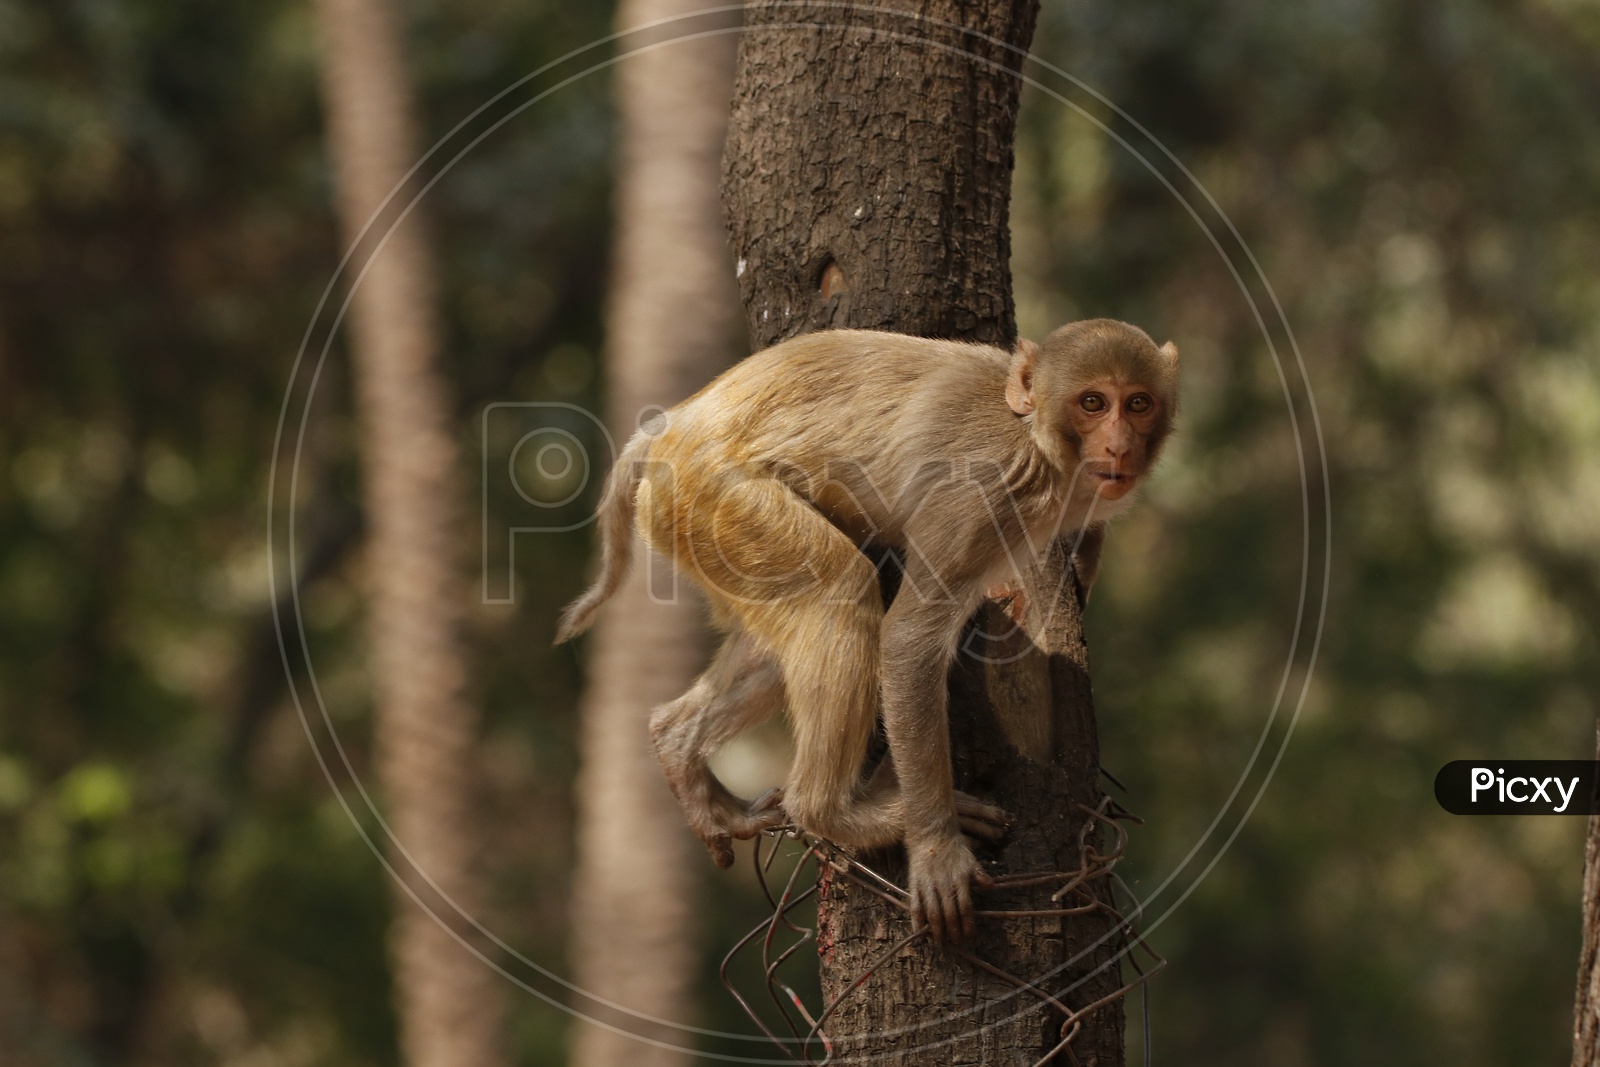 A monkey on a tree